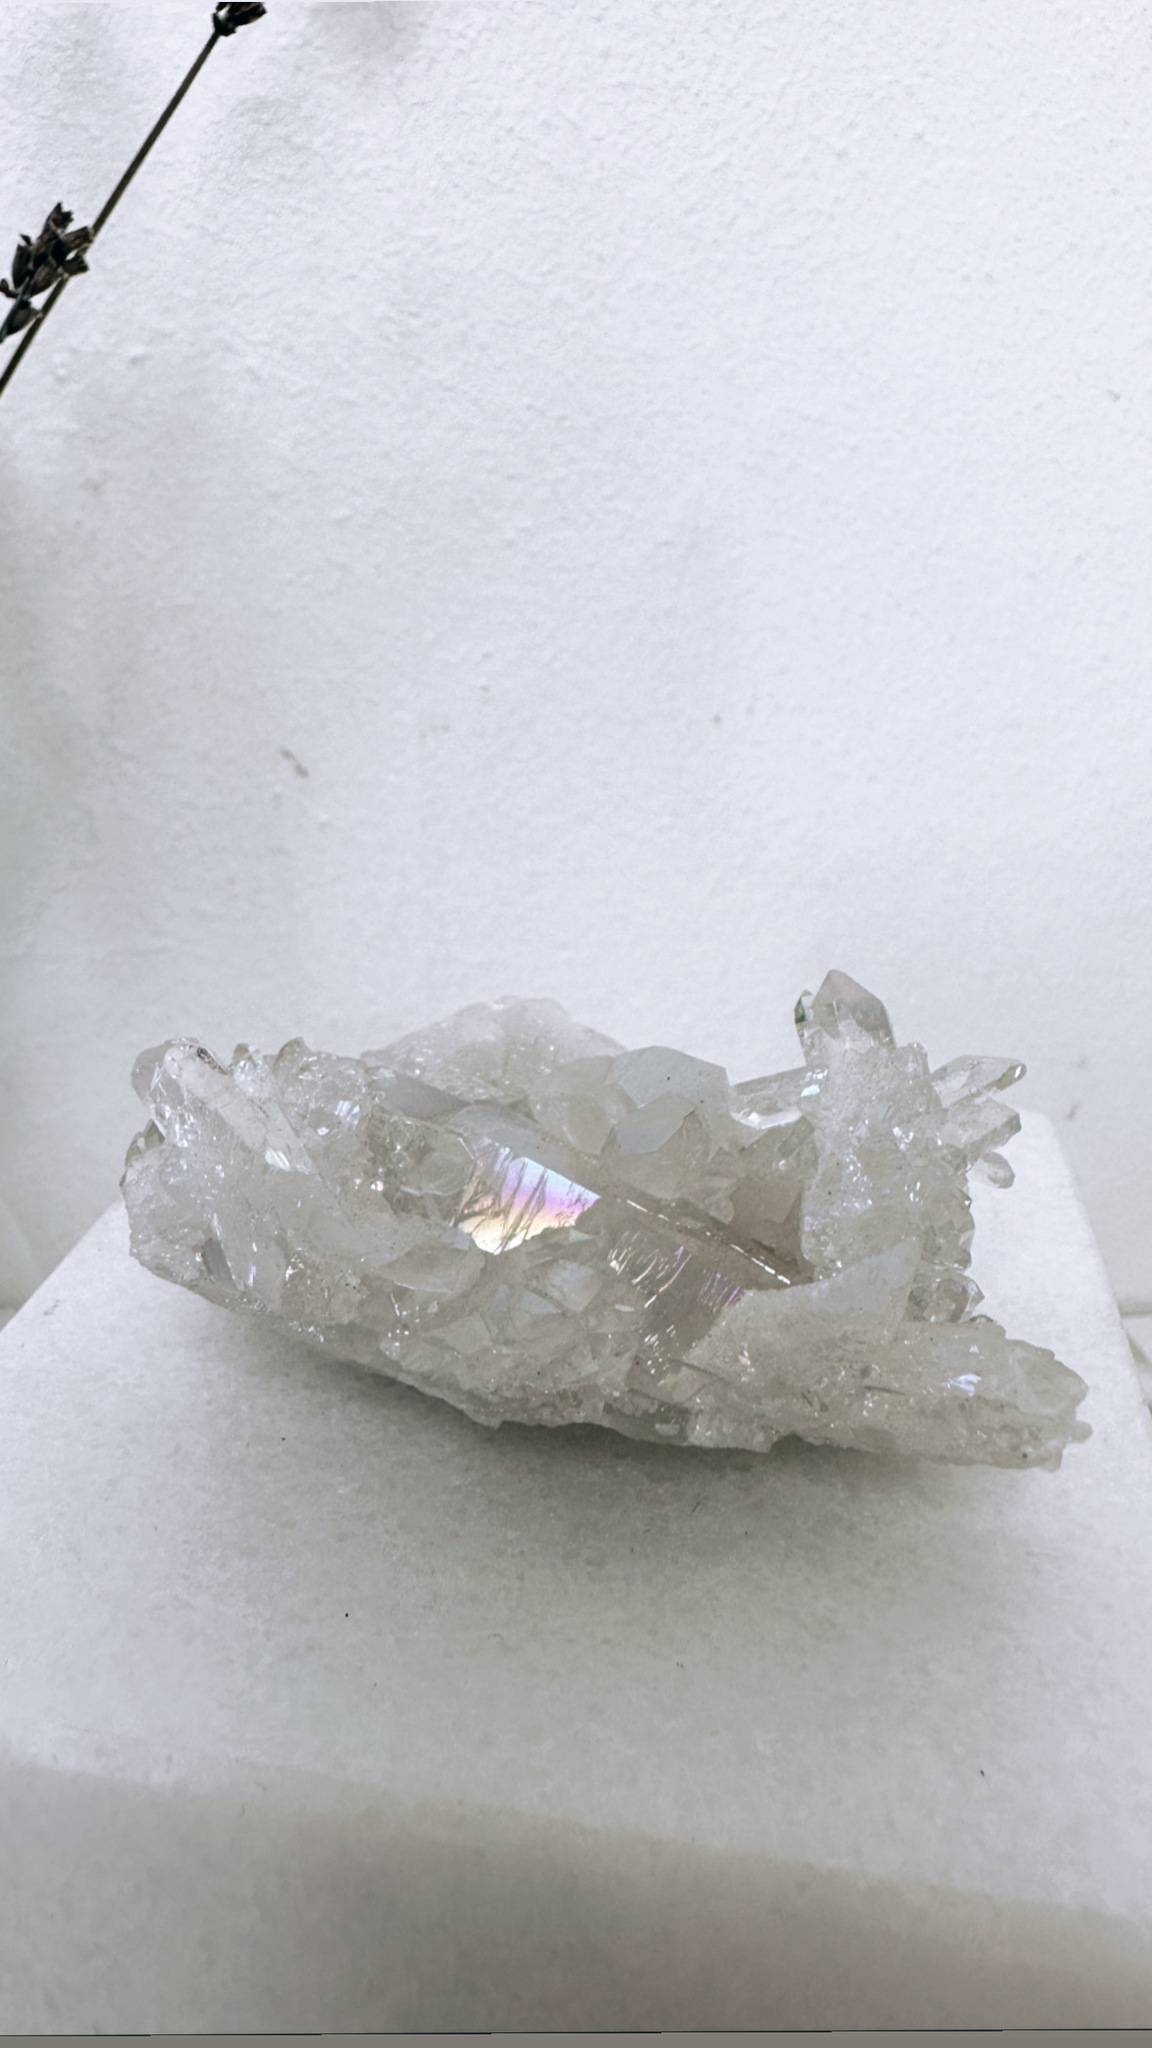 Bergkristall med aura, kluster